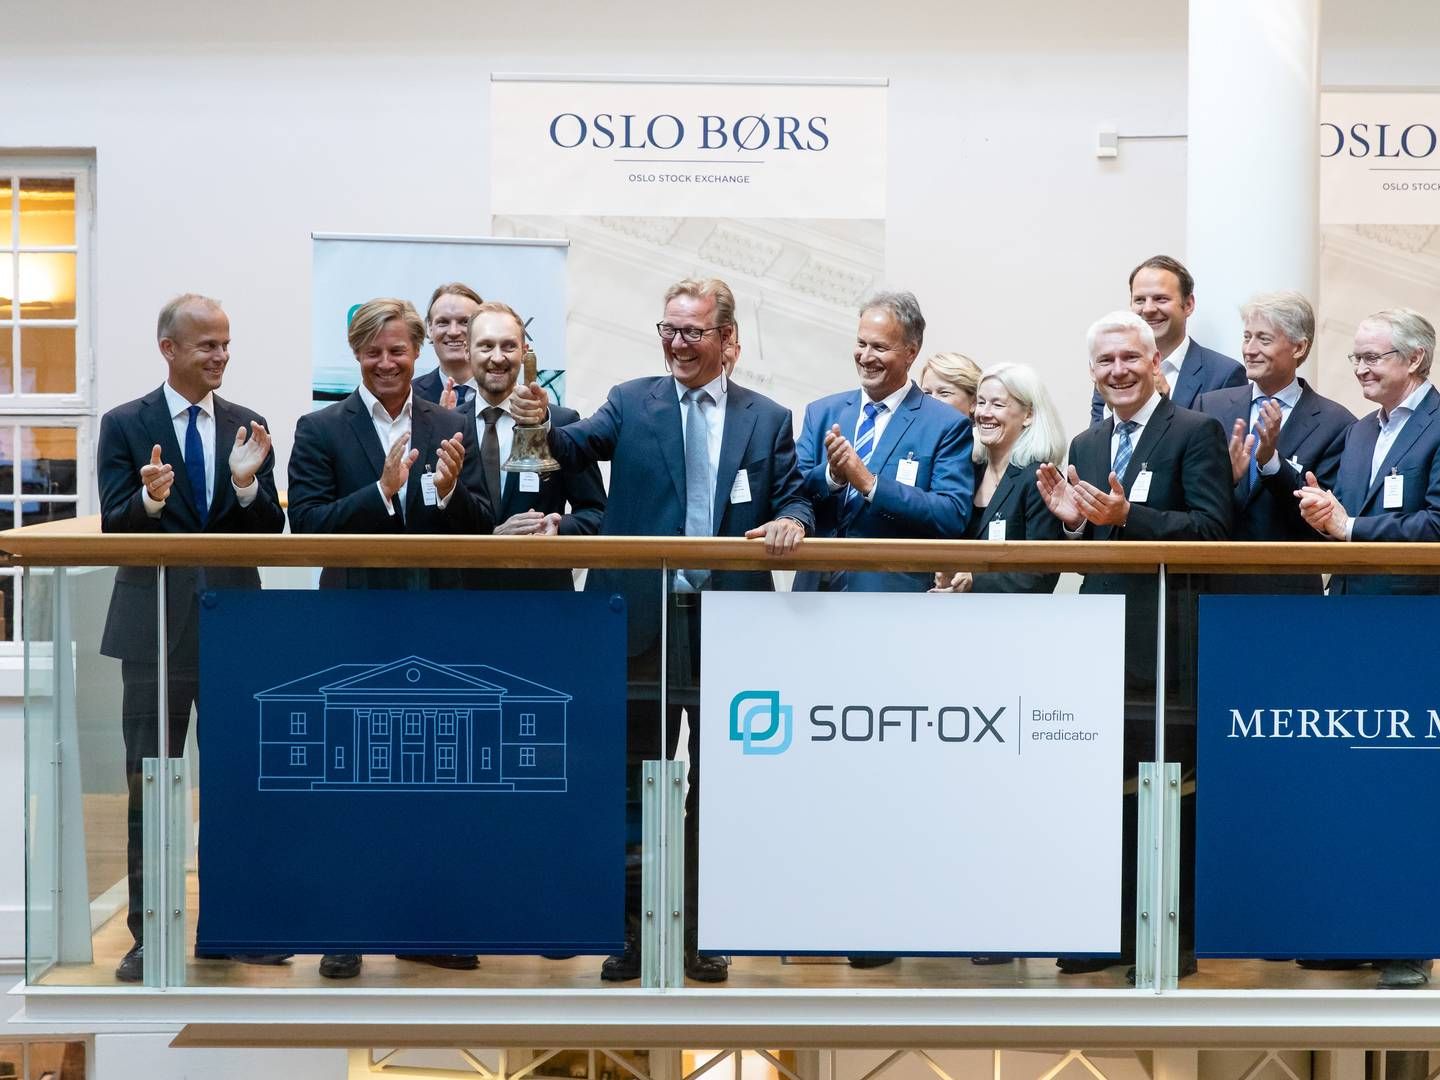 Der var højt humør under noteringen af norske Softox, men selskabet fyrer nu alle danske medarbejdere som følge af finansieringsproblemer. | Foto: Audun Braastad / NTB